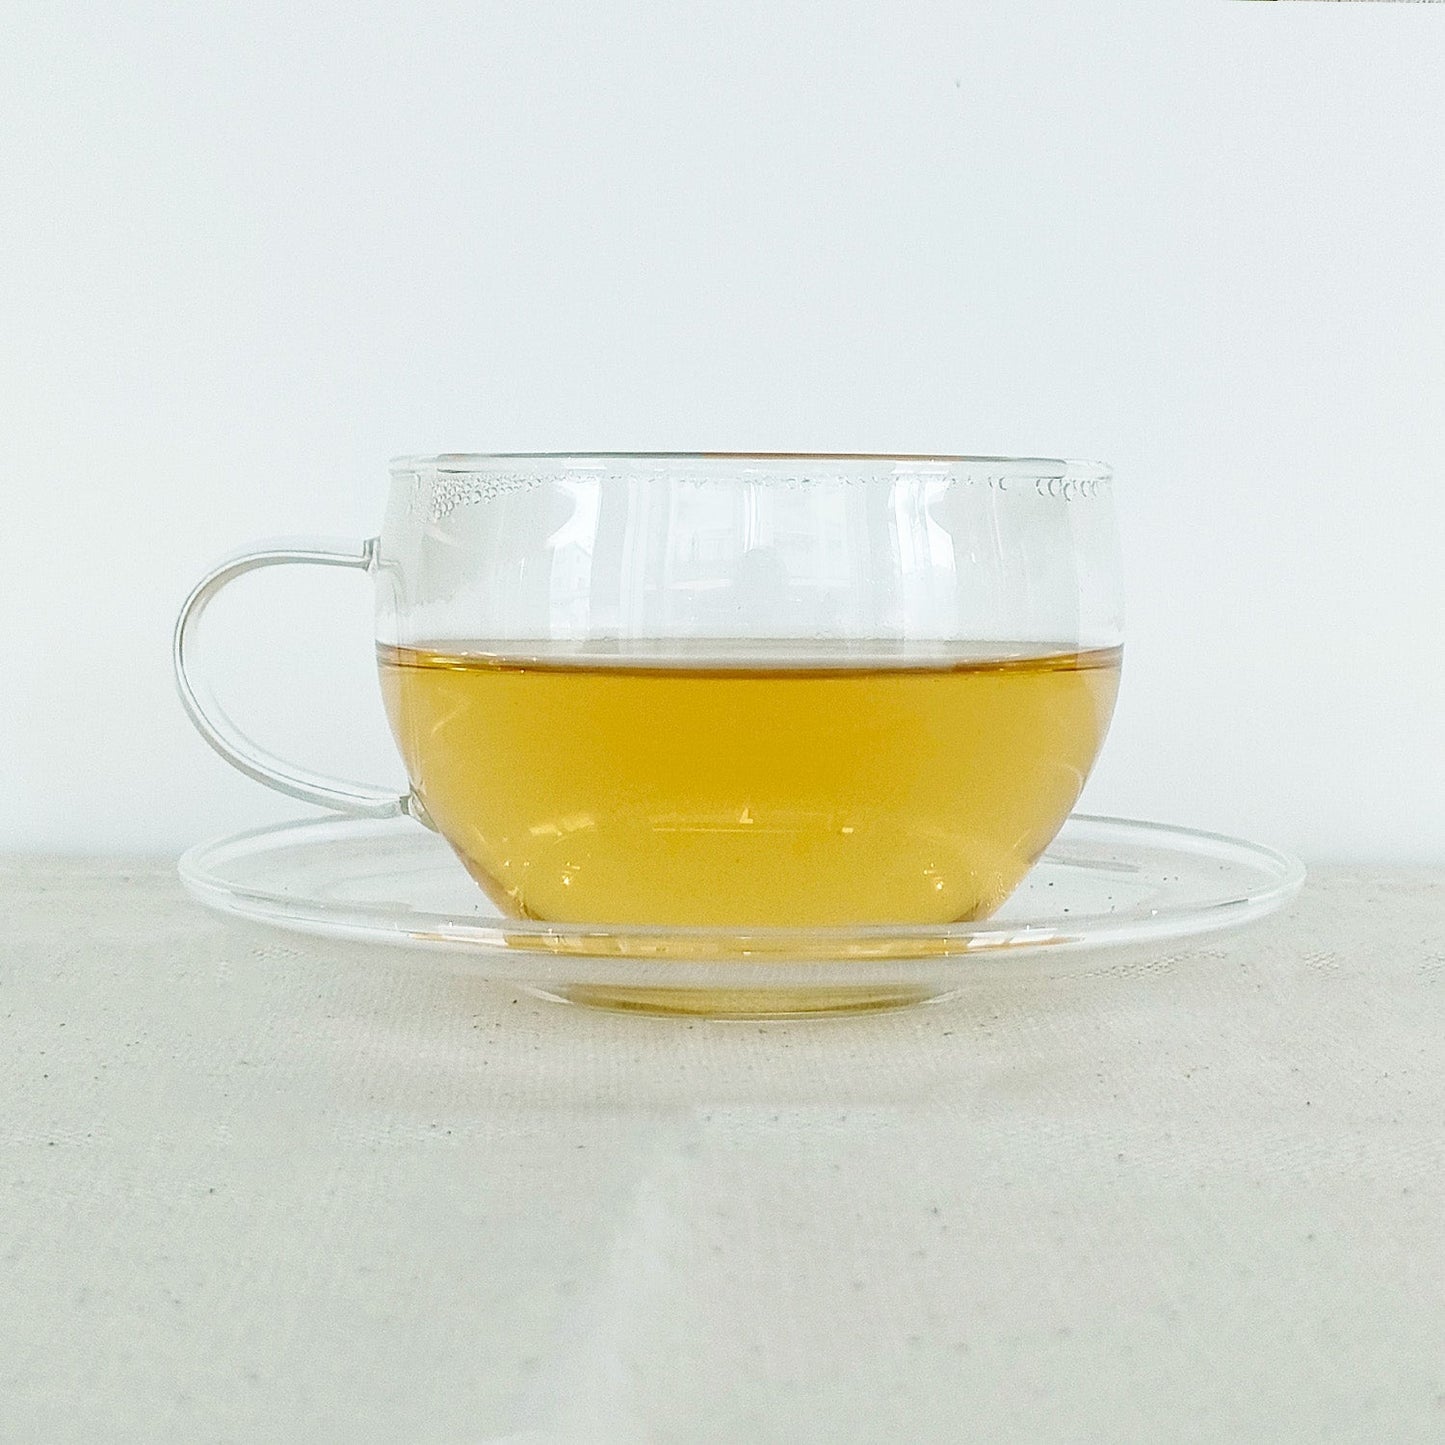 ドクダミ茶 × 1パック(1g×15包入り)